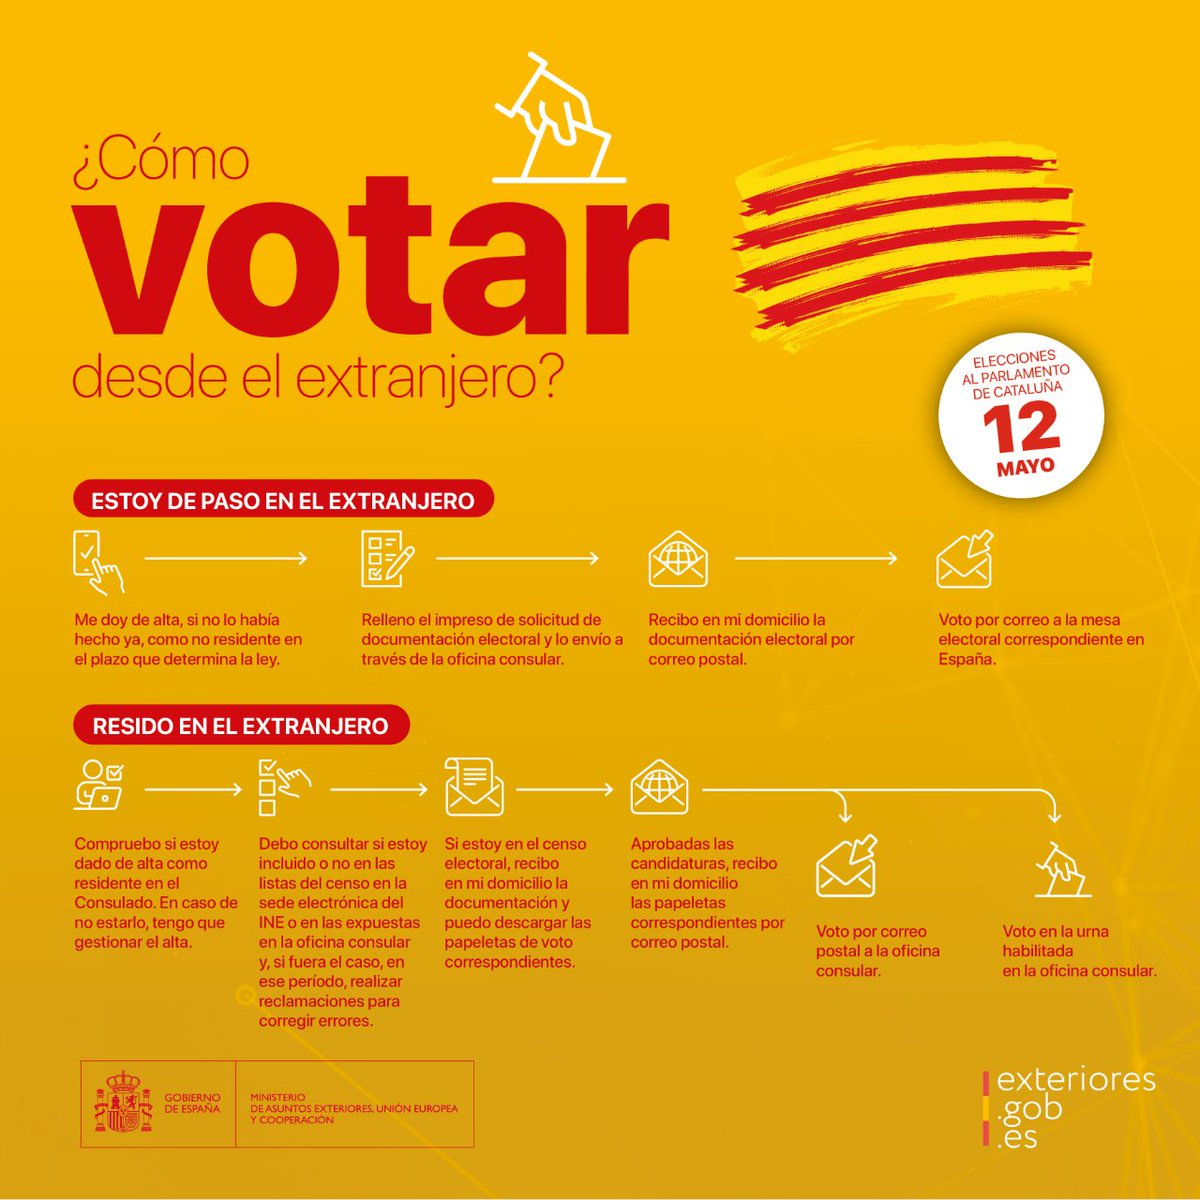 #VotoCERA: si eres español residente en el extranjero con derecho a voto en las #EleccionesAutonómicas #Cataluña2024 del #12M, consulta la información. #VotoPorCorreo al Consulado: hasta el 7 de mayo. Más ℹ️ en exteriores.gob.es/es/Paginas/Ele… #VotoExterior #EleccionesCatalanas #12M